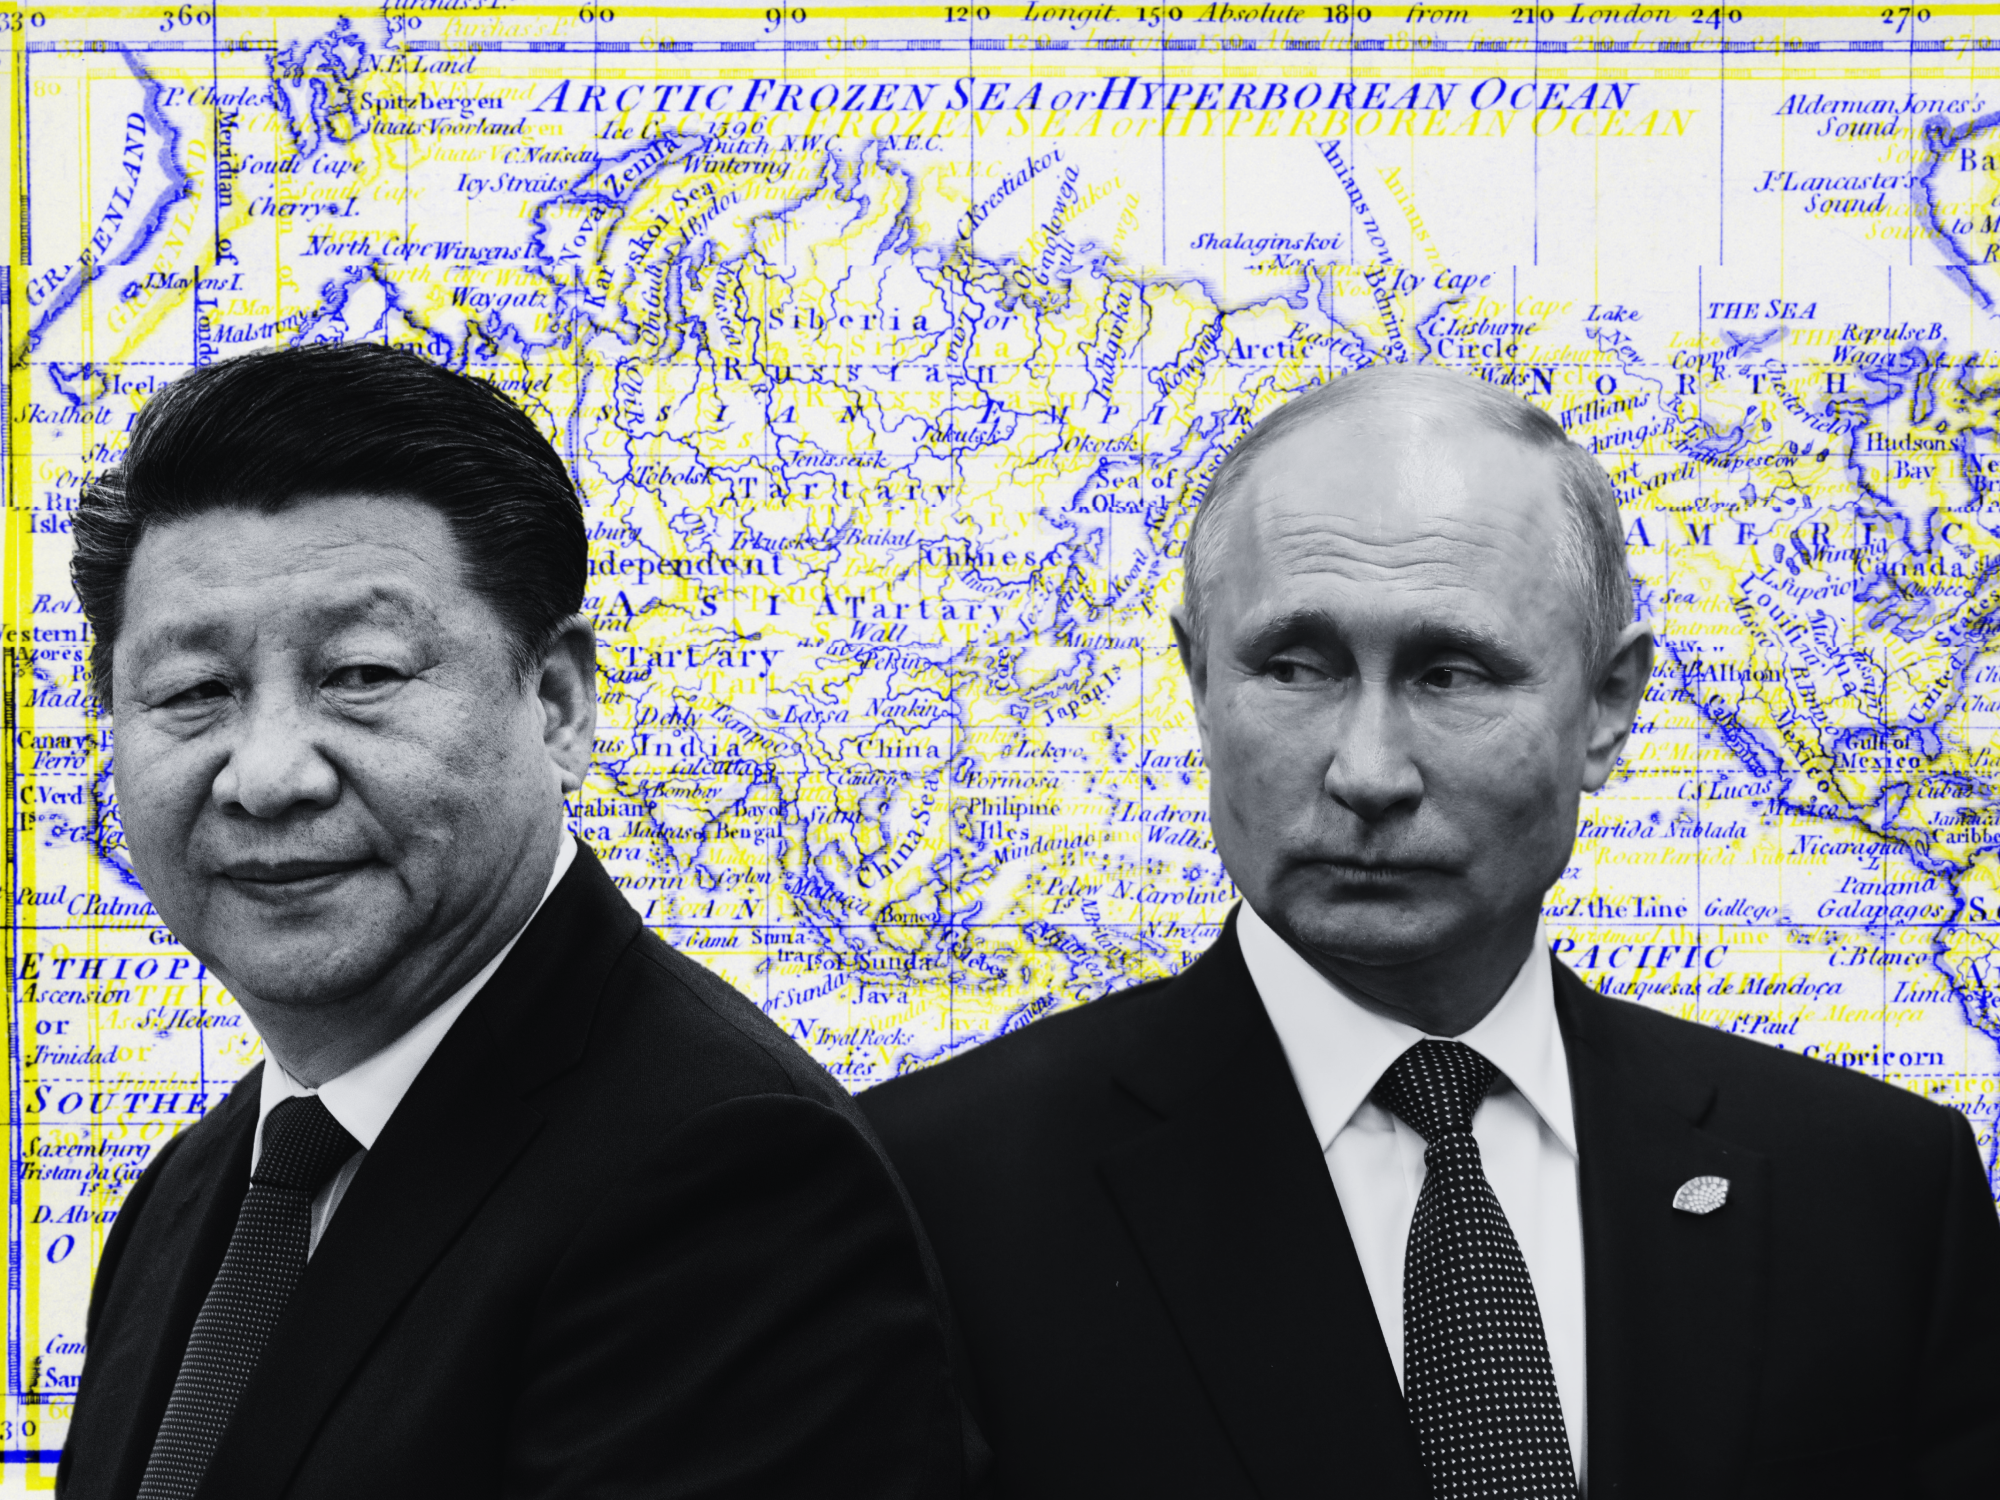 War in Ukraine Has Russia's Putin, Xi Jinping Changing the World